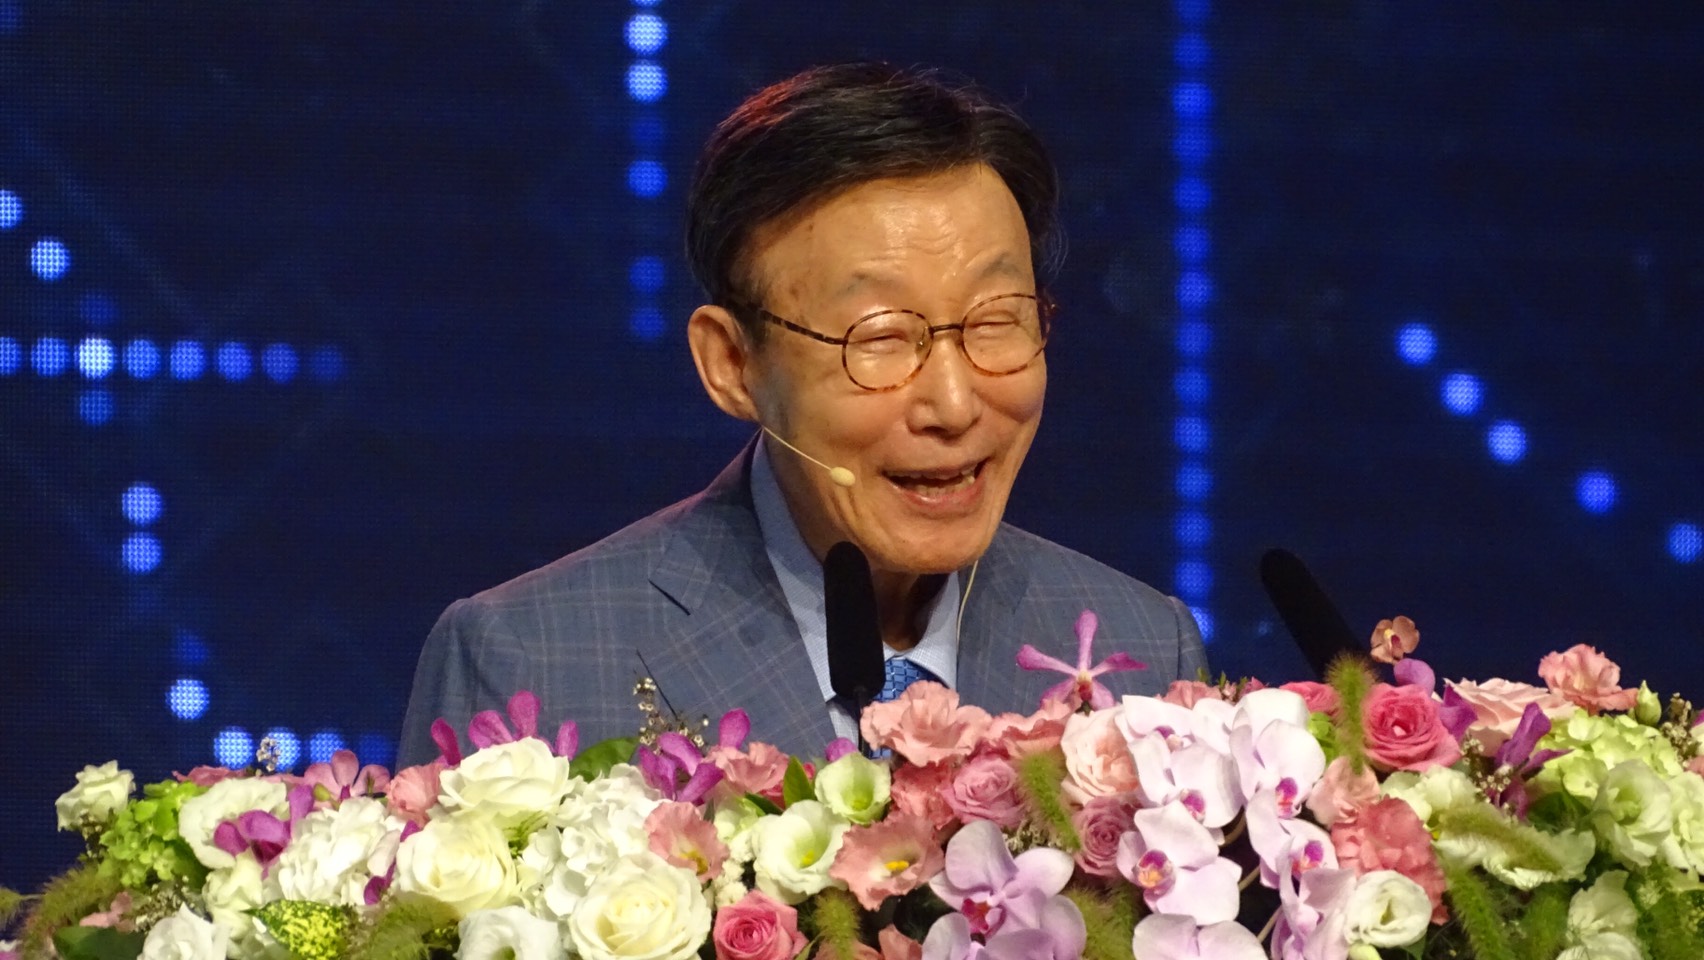 趙鏞基牧師安息主懷 享壽86歲